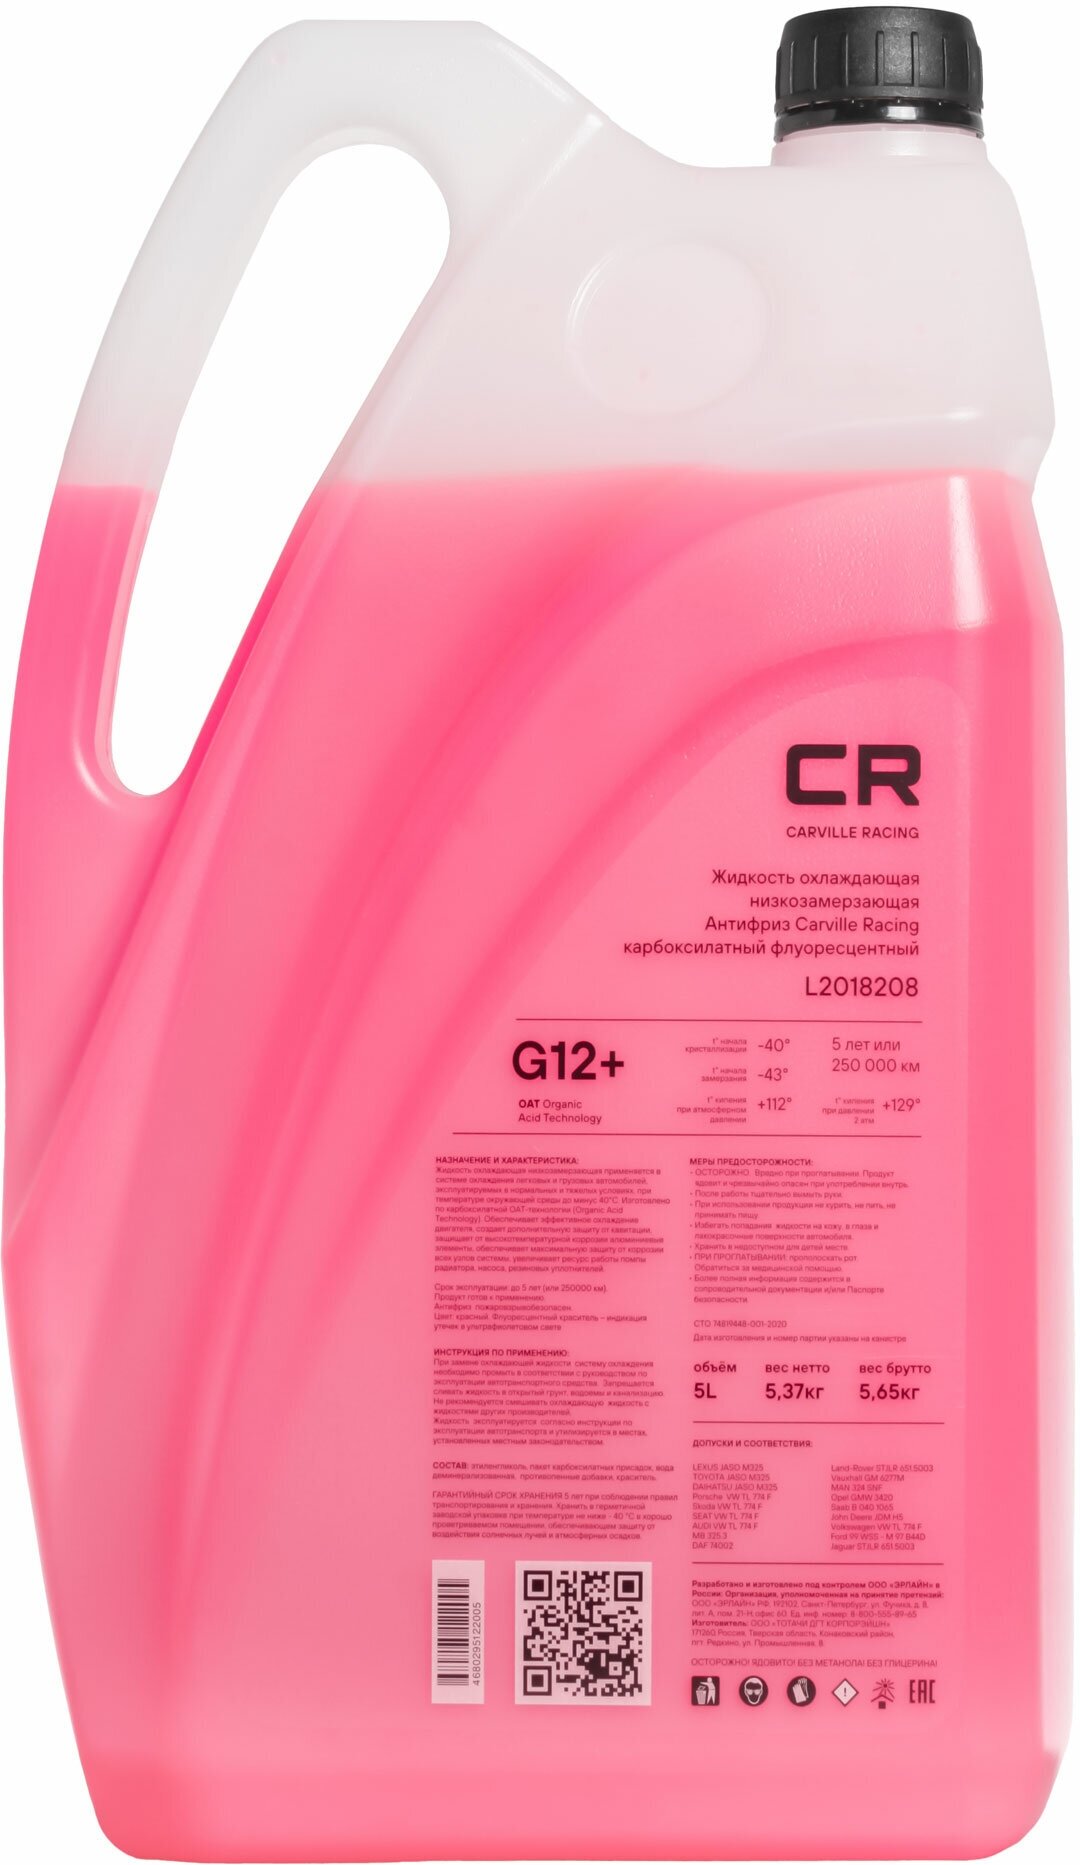 Антифриз CR красный карбоксилатный флуор. G12+ 5,37 кг CARVILLE RACING L2018208 | цена за 1 шт